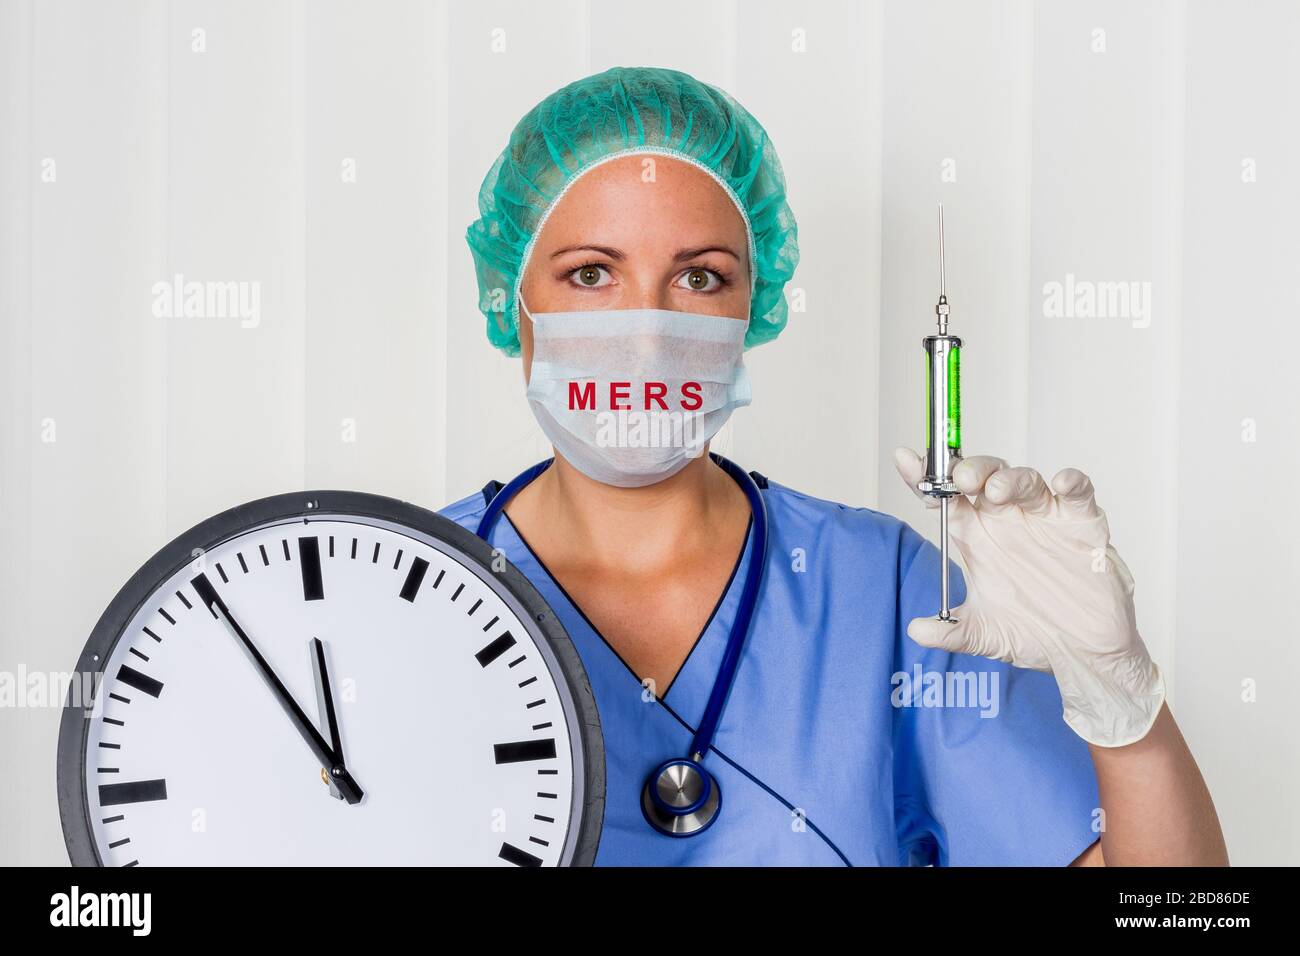 Chirurgie-Arzt in Srubs, mit einer Uhr, 5 vor 12, MERS-COV Stockfoto